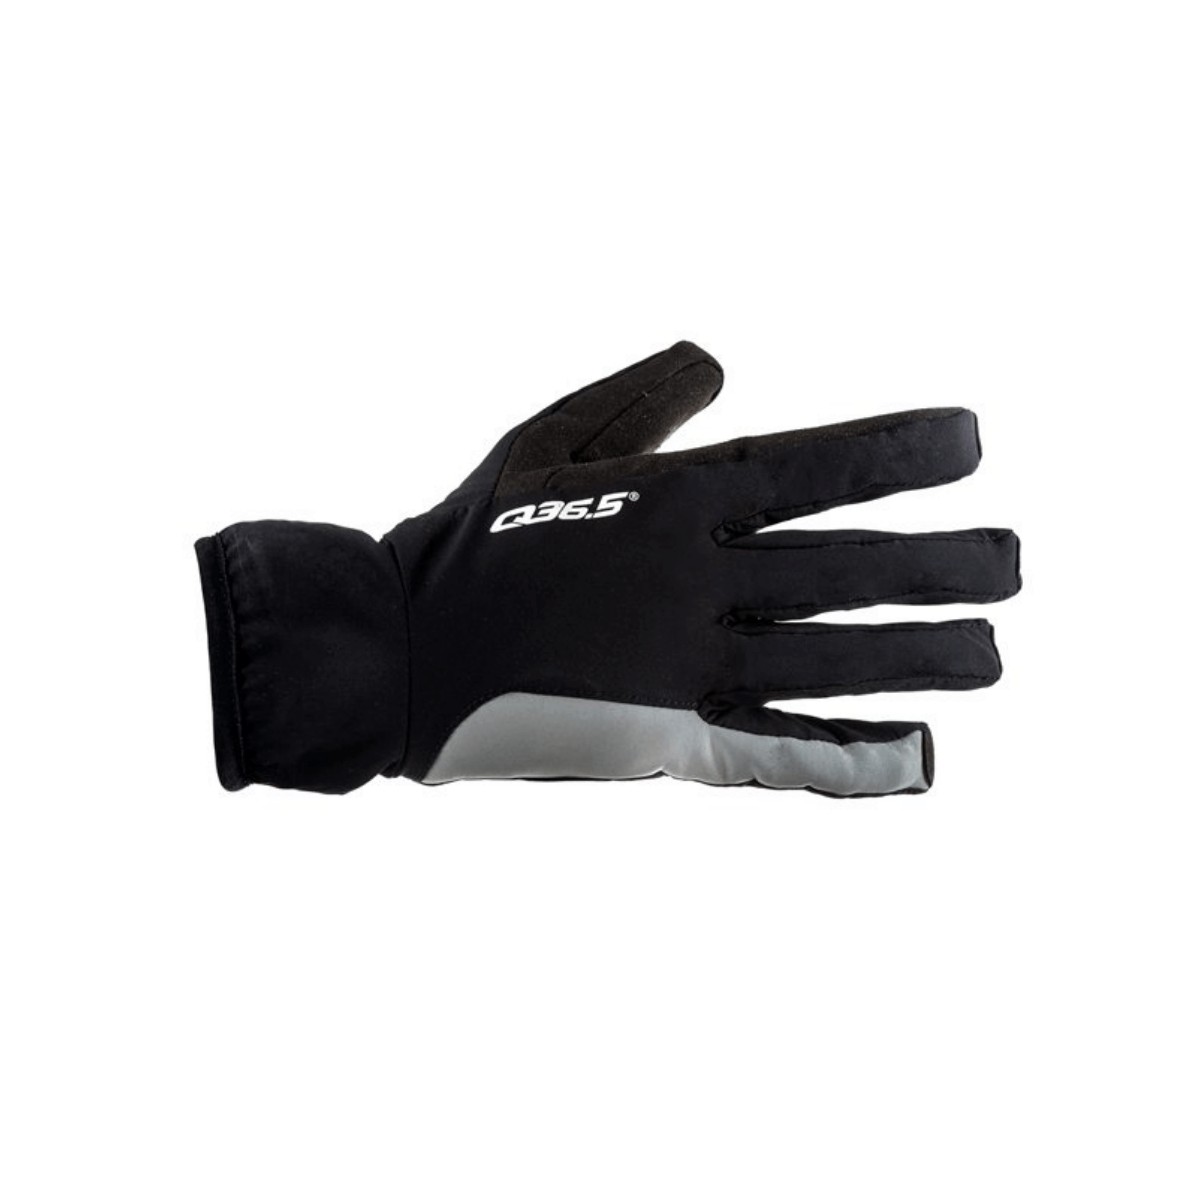 Handschuhe Q36.5 Be Love 0 Schwarz, Größe XL